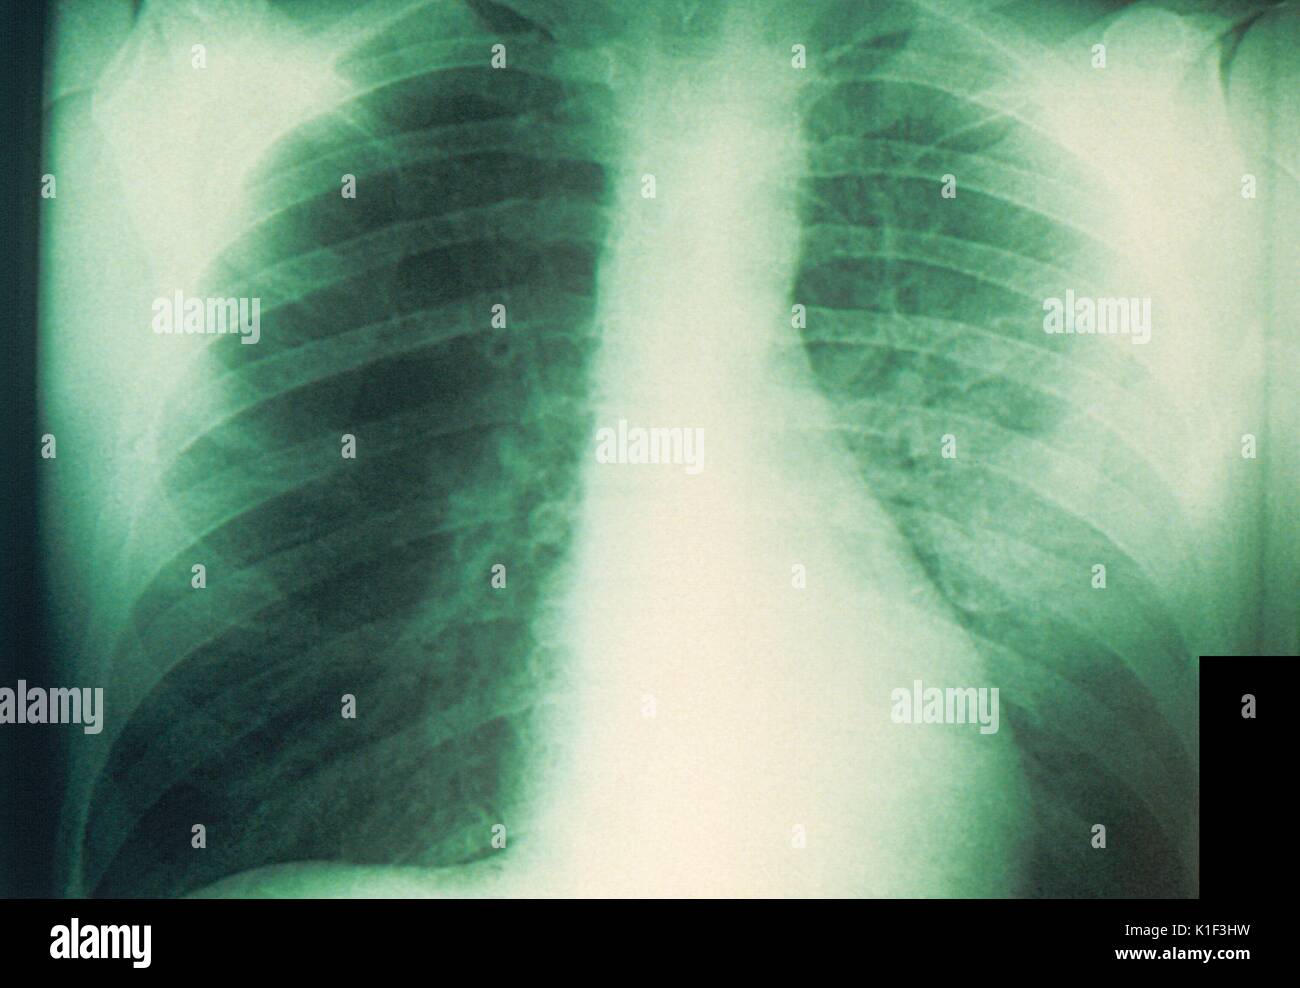 Radiografía de tórax en un paciente con enfermedad de Niemann Pick